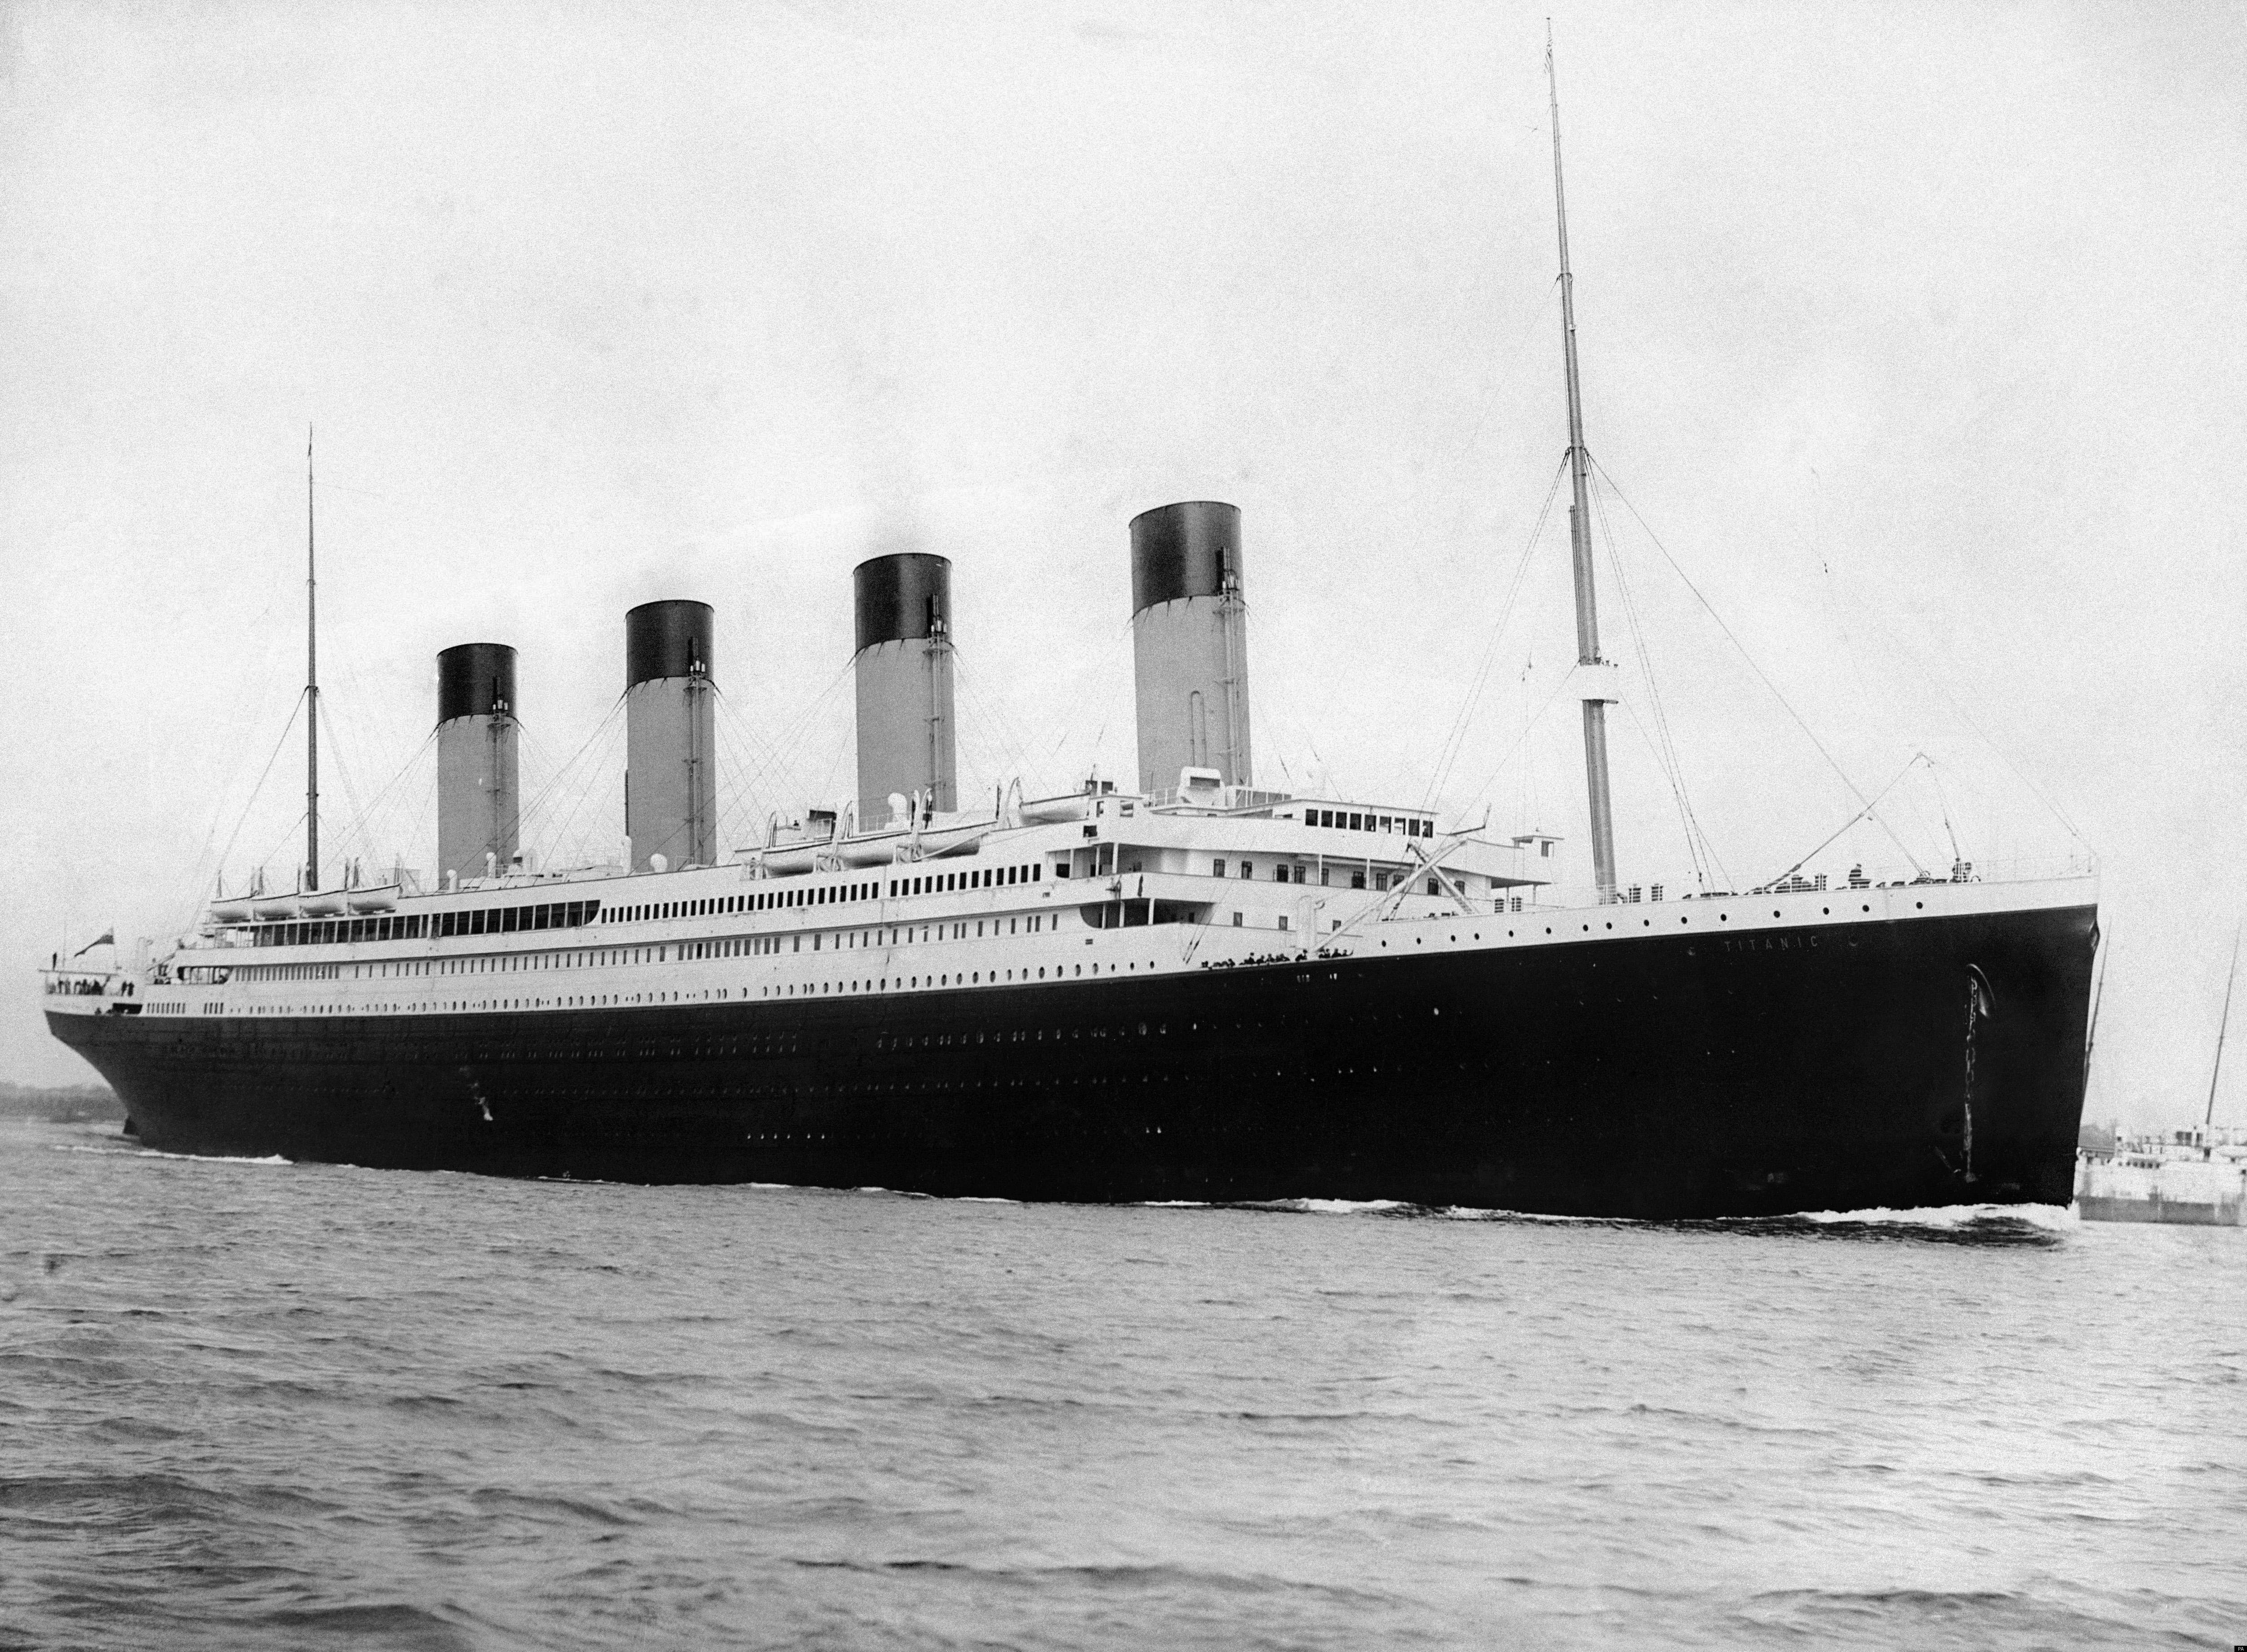 A képen látható Titanic ma is 3800 méterrel az Atlanti-óceán felszíne alatt van. Testvérhajóját, a Gigantic - Gigantikus - nevű hajót a Titanic elsüllyedése után keresztelték át Britannicra. A nagyzoló név megváltoztatása babona volt, de nem hozott szerencsét. Az első világháború során a Britannic is elsüllyedt.